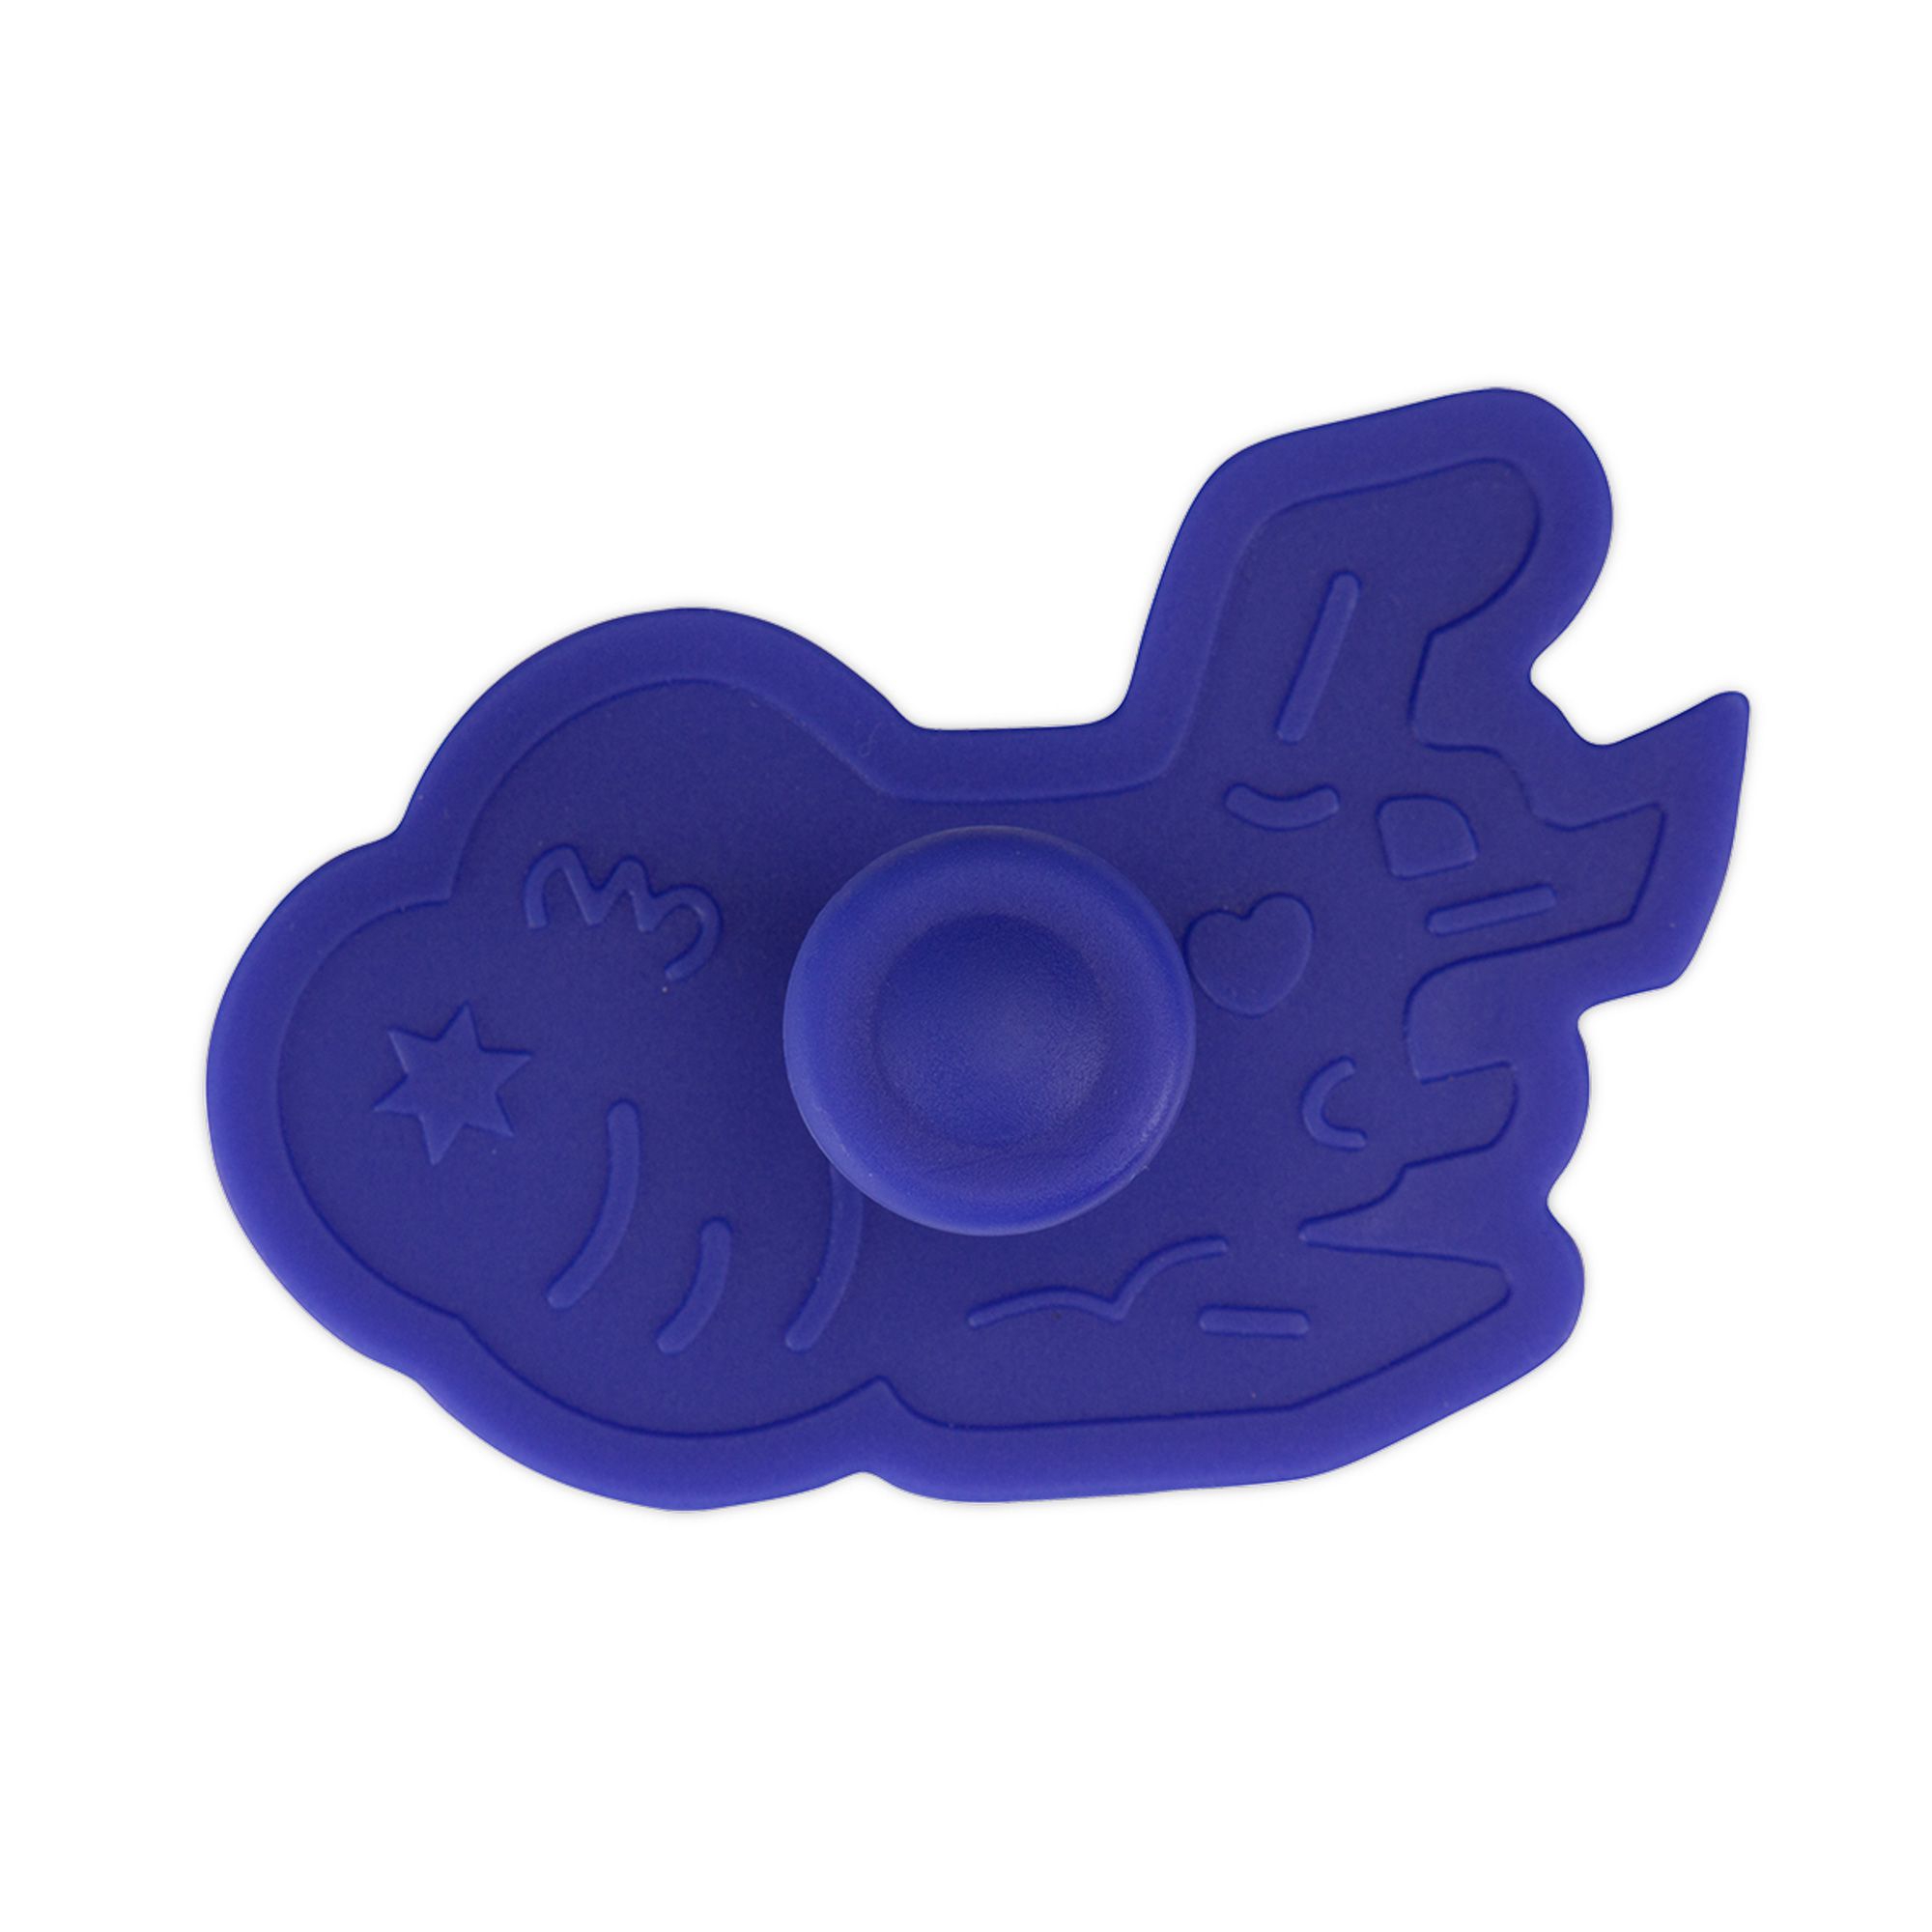 Städter - cookie cutter airplane 6.5 cm - blue